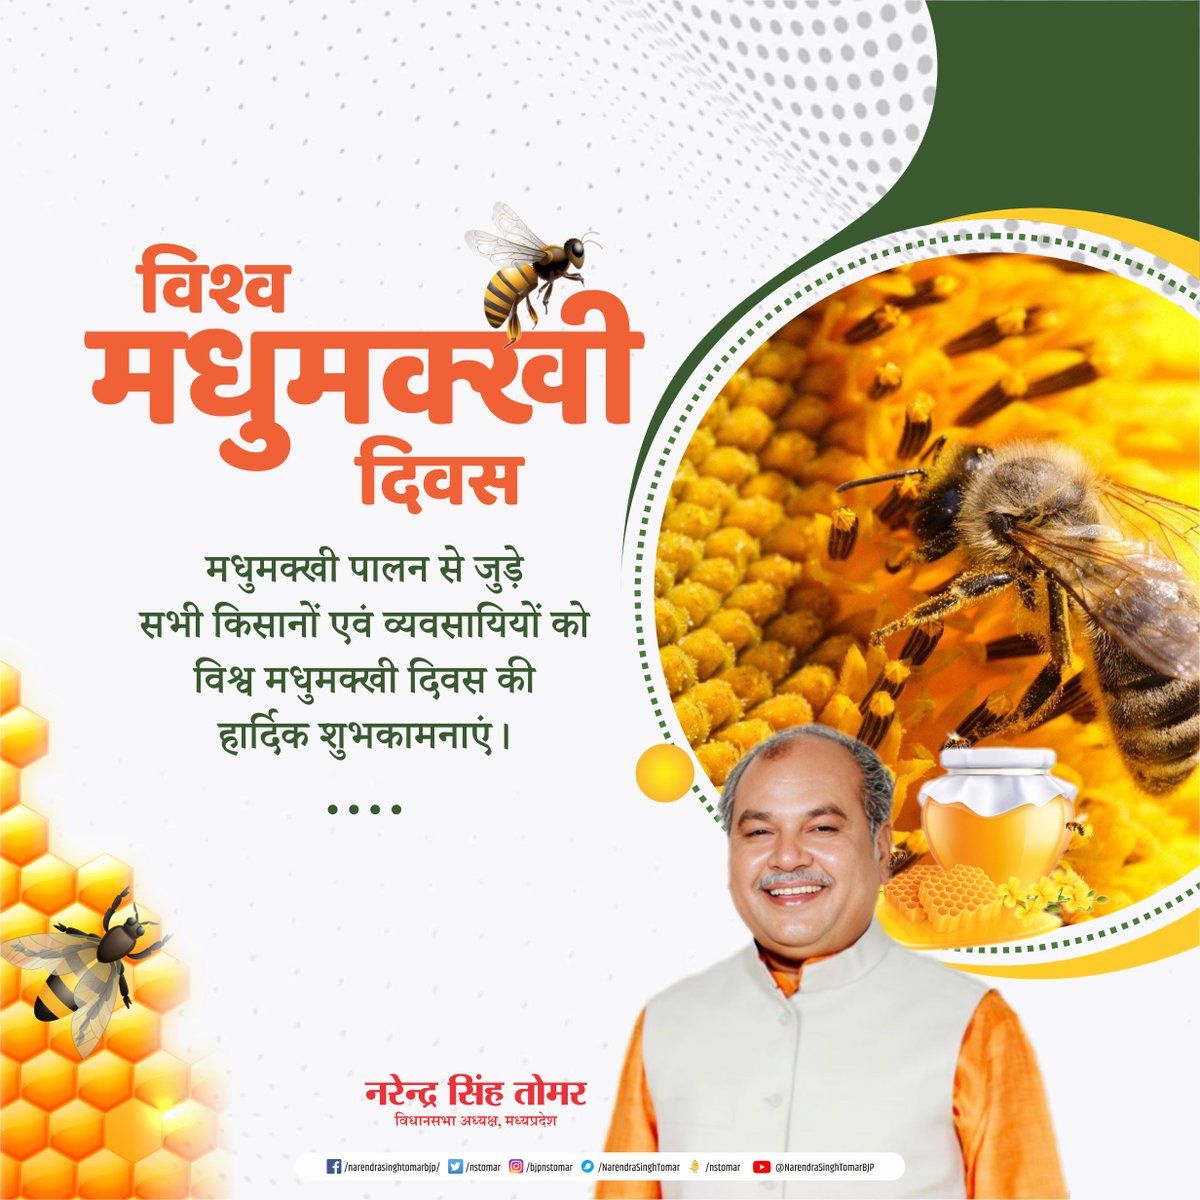 मधुमक्खी पालन से जुड़े सभी किसानों एवं व्यवसायियों को विश्व मधुमक्खी दिवस की हार्दिक शुभकामनाएं...